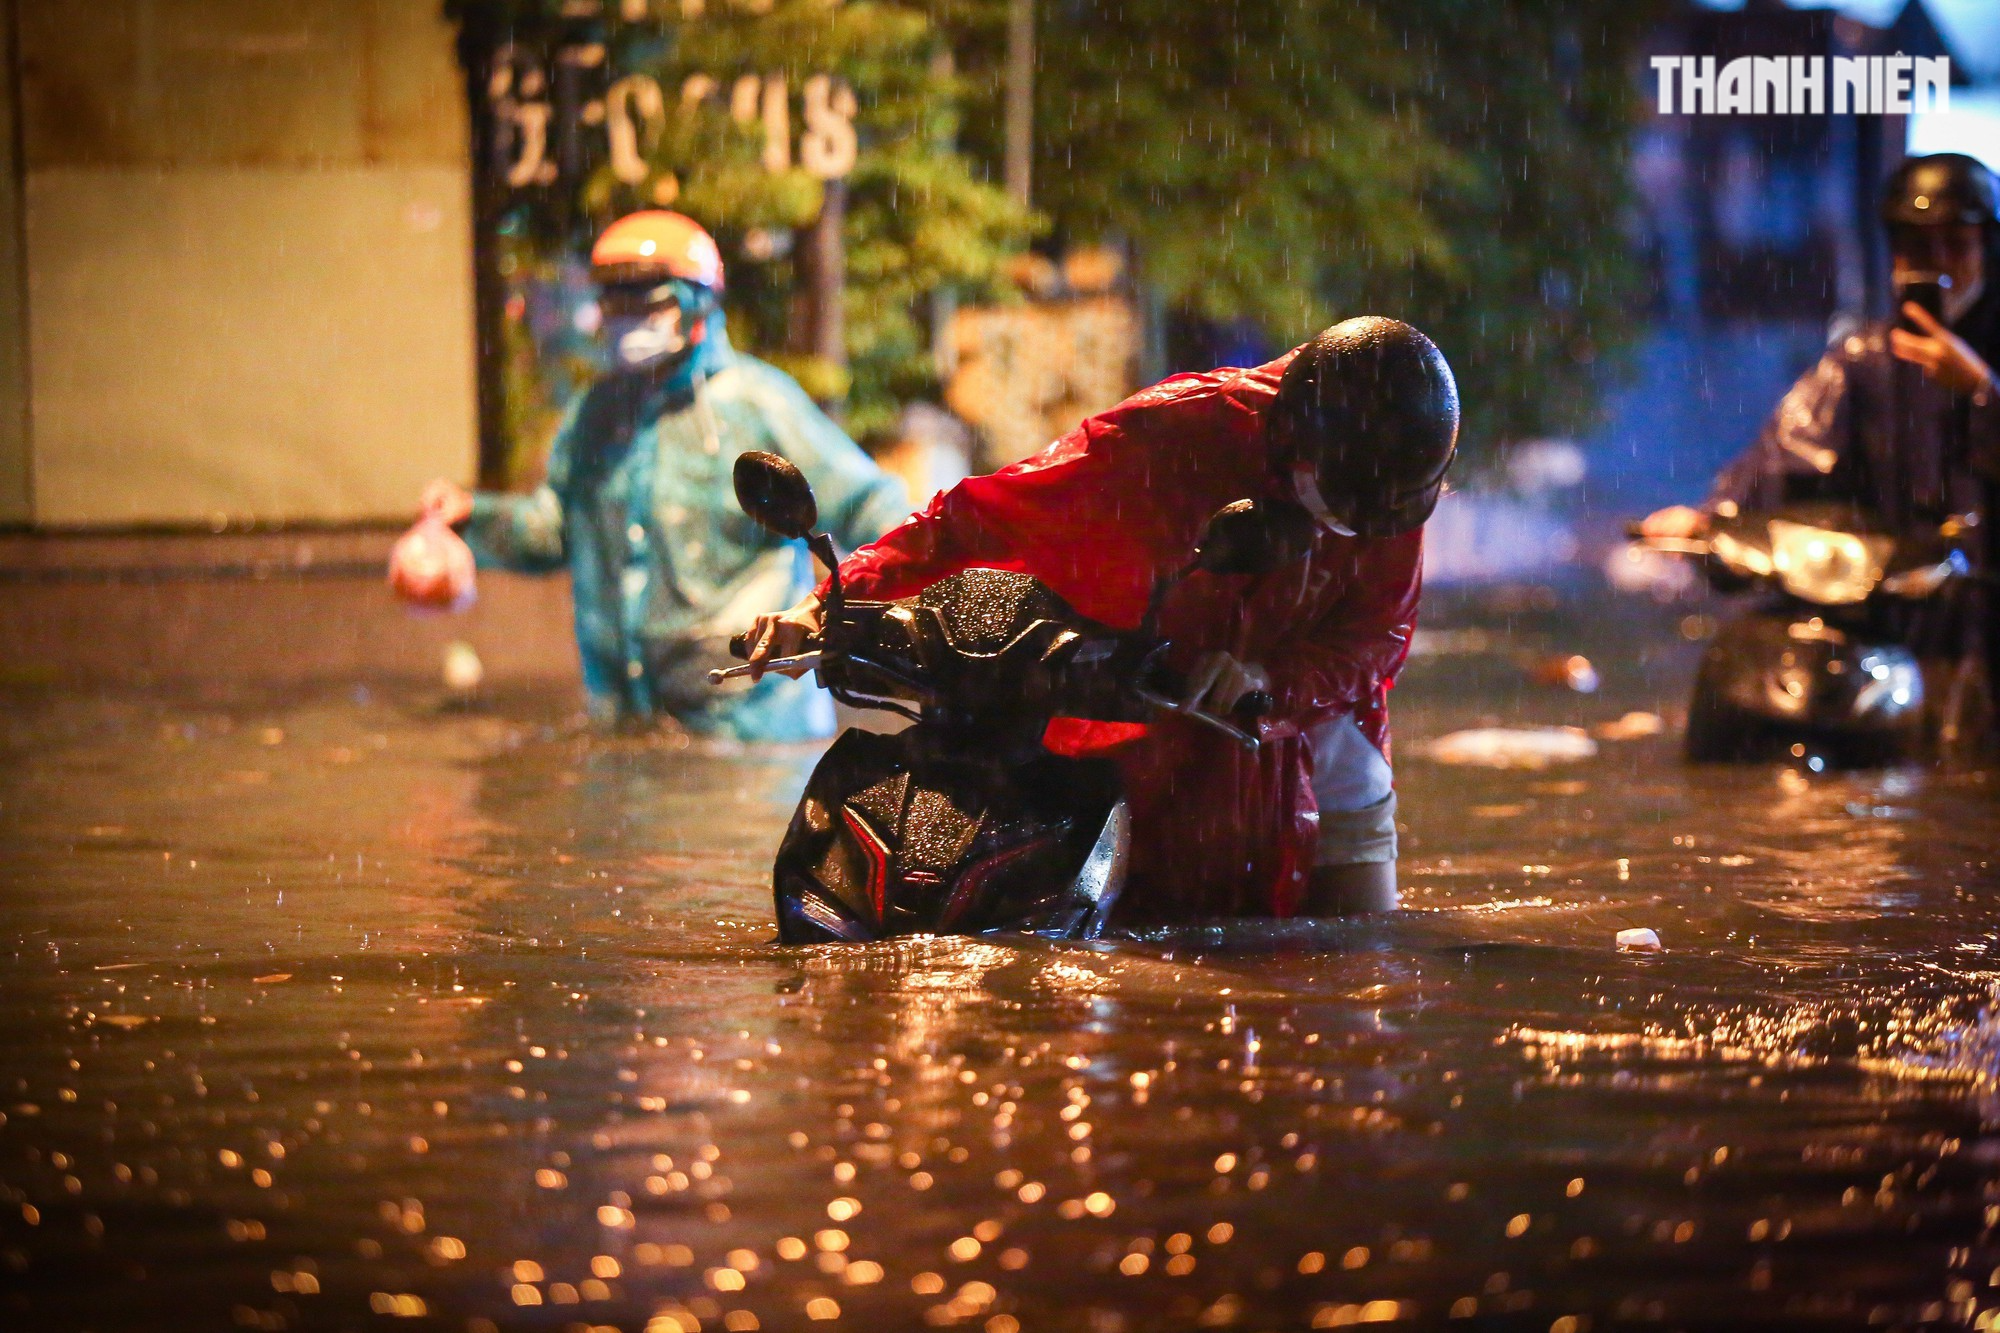 TP.HCM mưa lớn tối nay: Nước dâng tới yên, có người 'cõng xe' qua đoạn ngập - Ảnh 4.